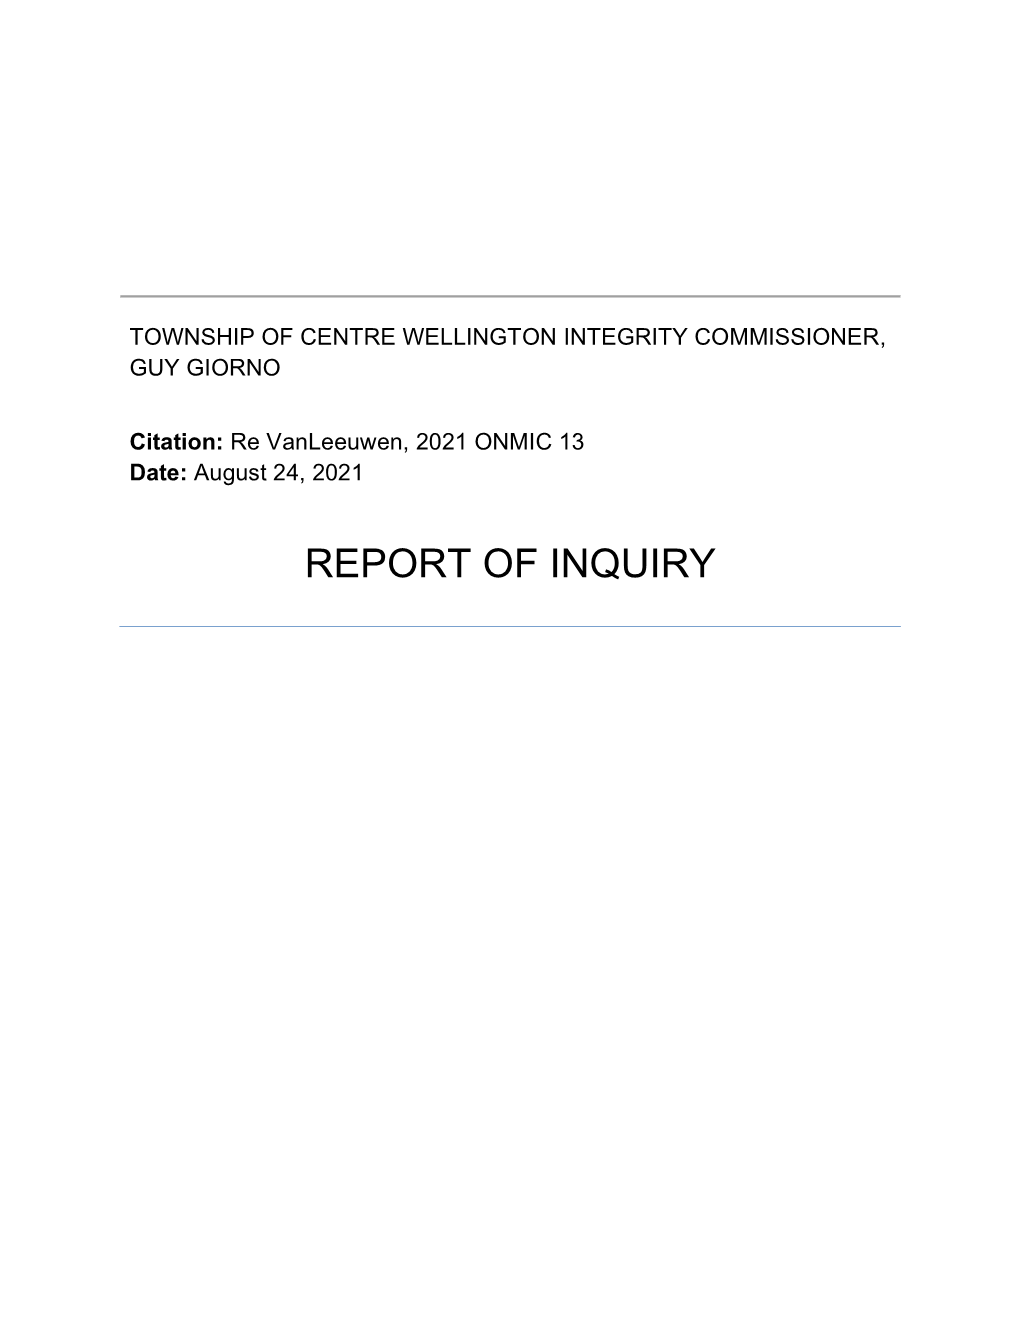 Report of Inquiry